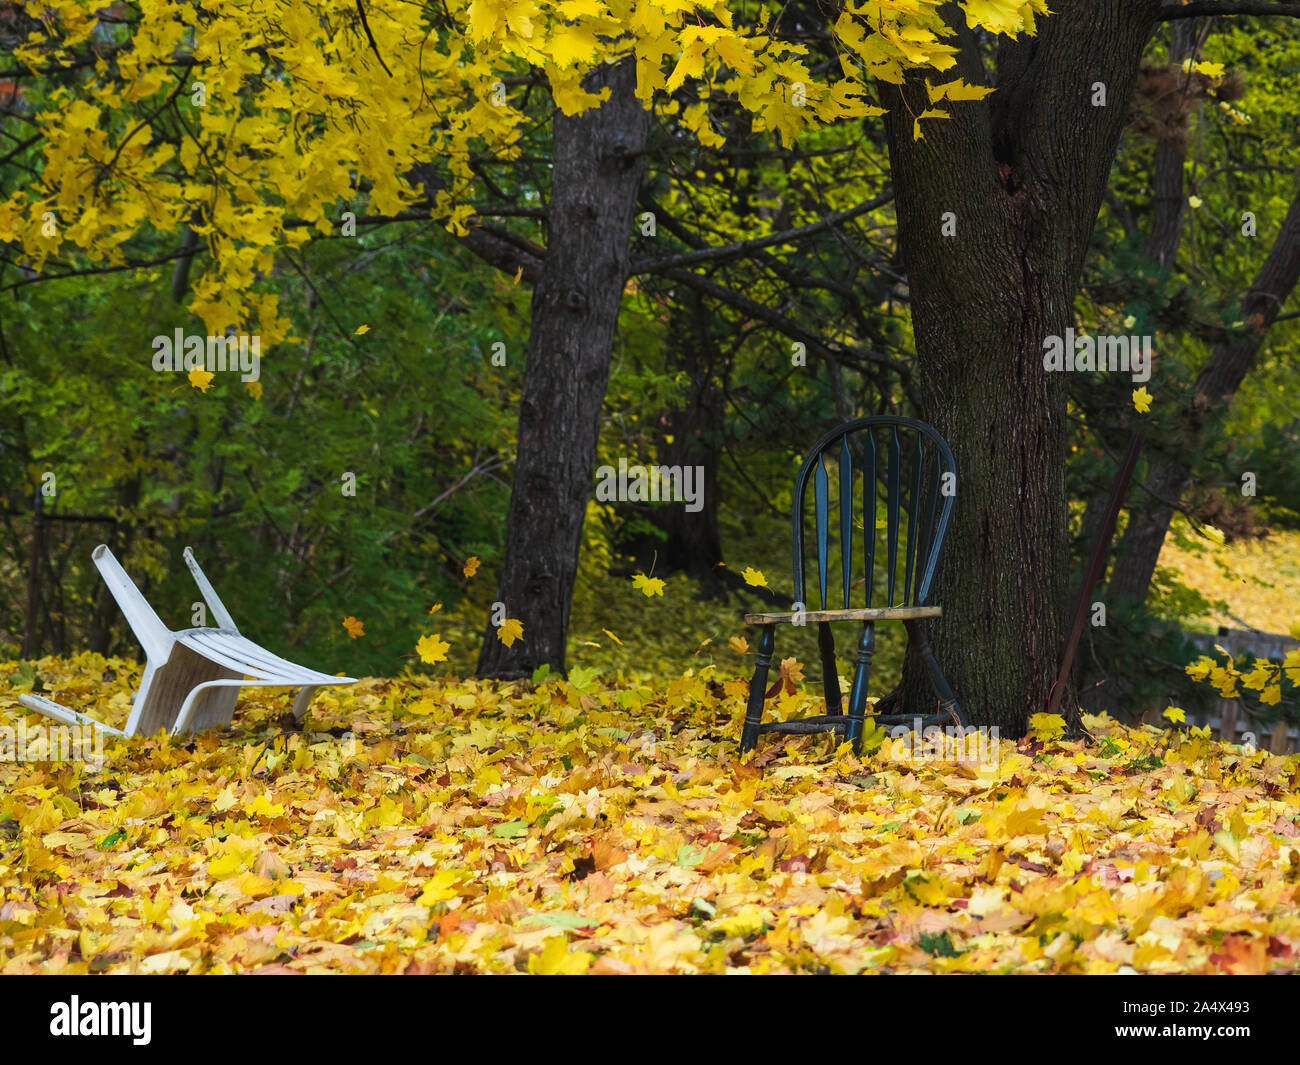 Grünen Stuhl sitzt im Freien während der Ahorn baum Blatt fallen. Weißer Stuhl hat über wie Blätter im Wind fliegen Vergangenheit gefallen. Stockfoto